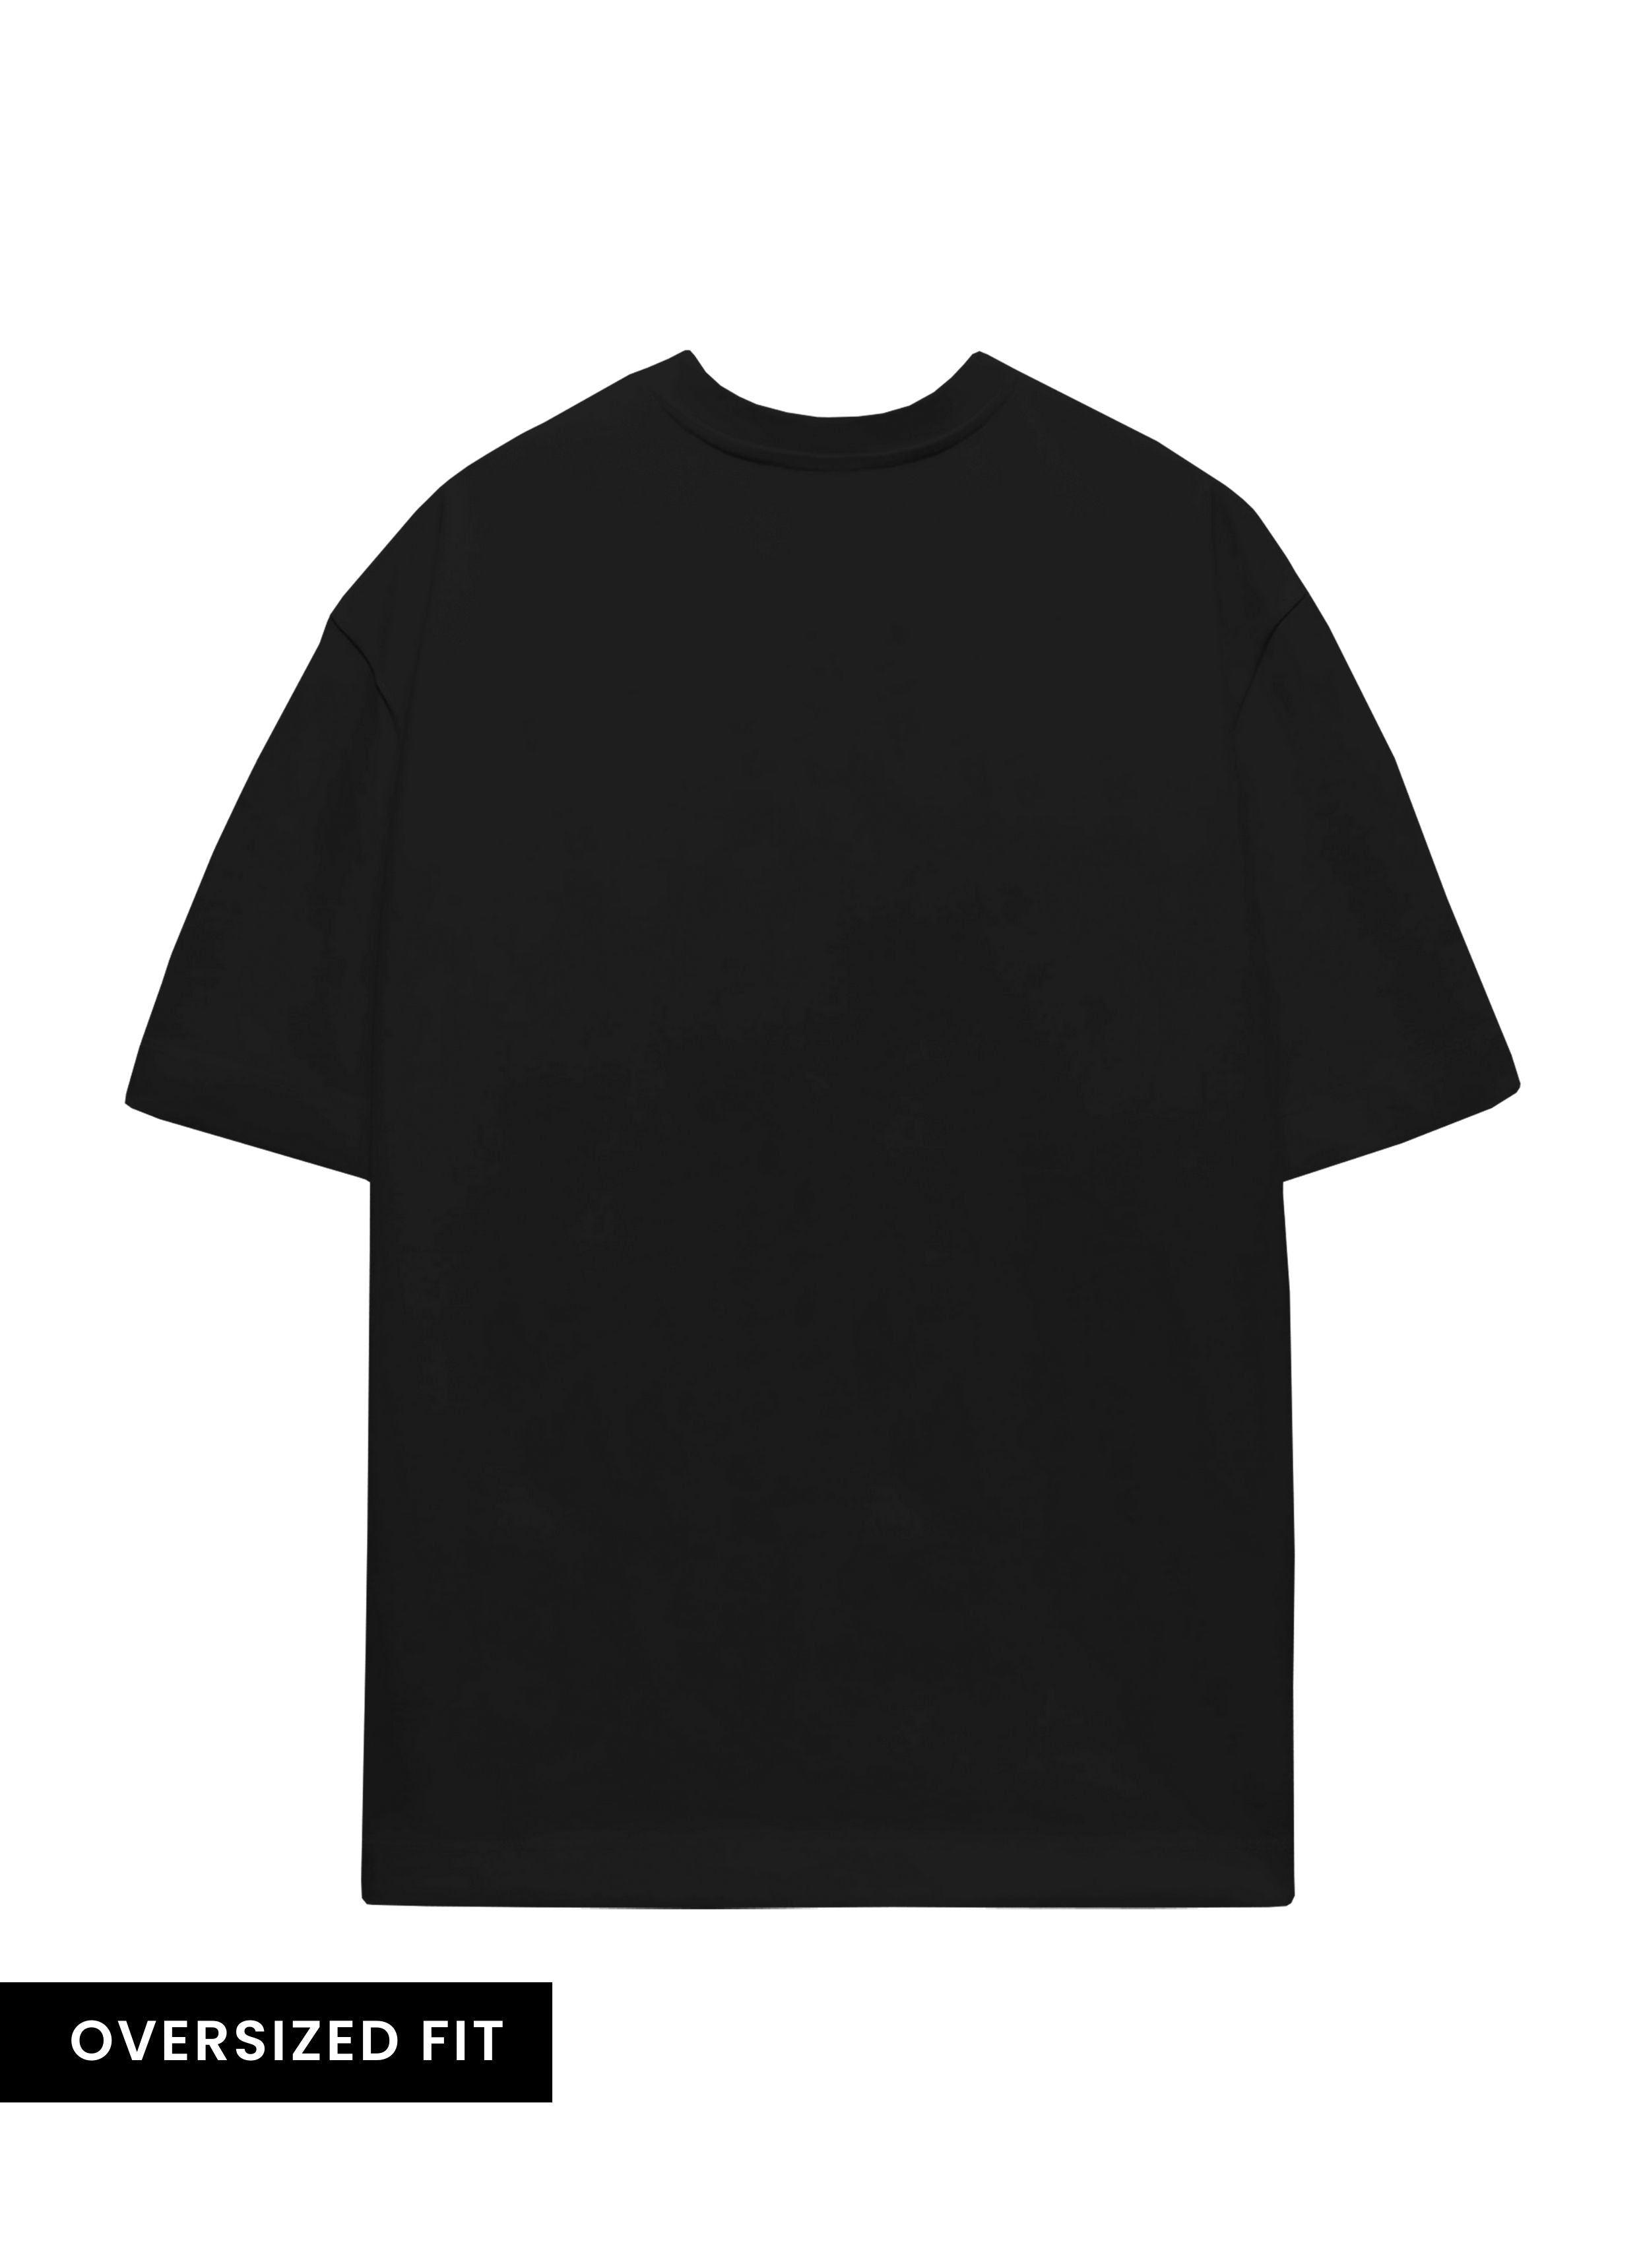 Zayn Malik V1 Oversized Unisex T-Shirt | BFS